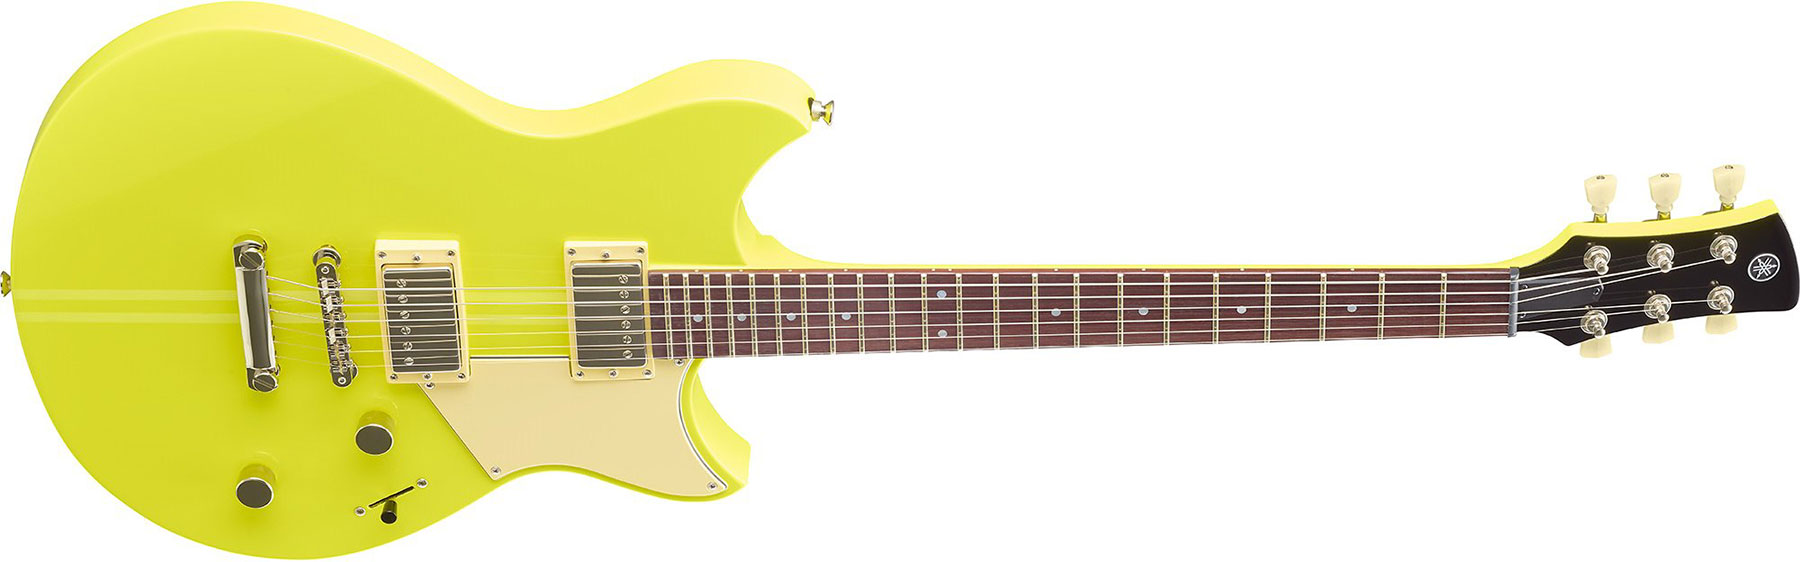 Yamaha Rse20 Revstar Element Hh Ht Rw - Neon Yellow - Guitarra eléctrica de doble corte. - Variation 1